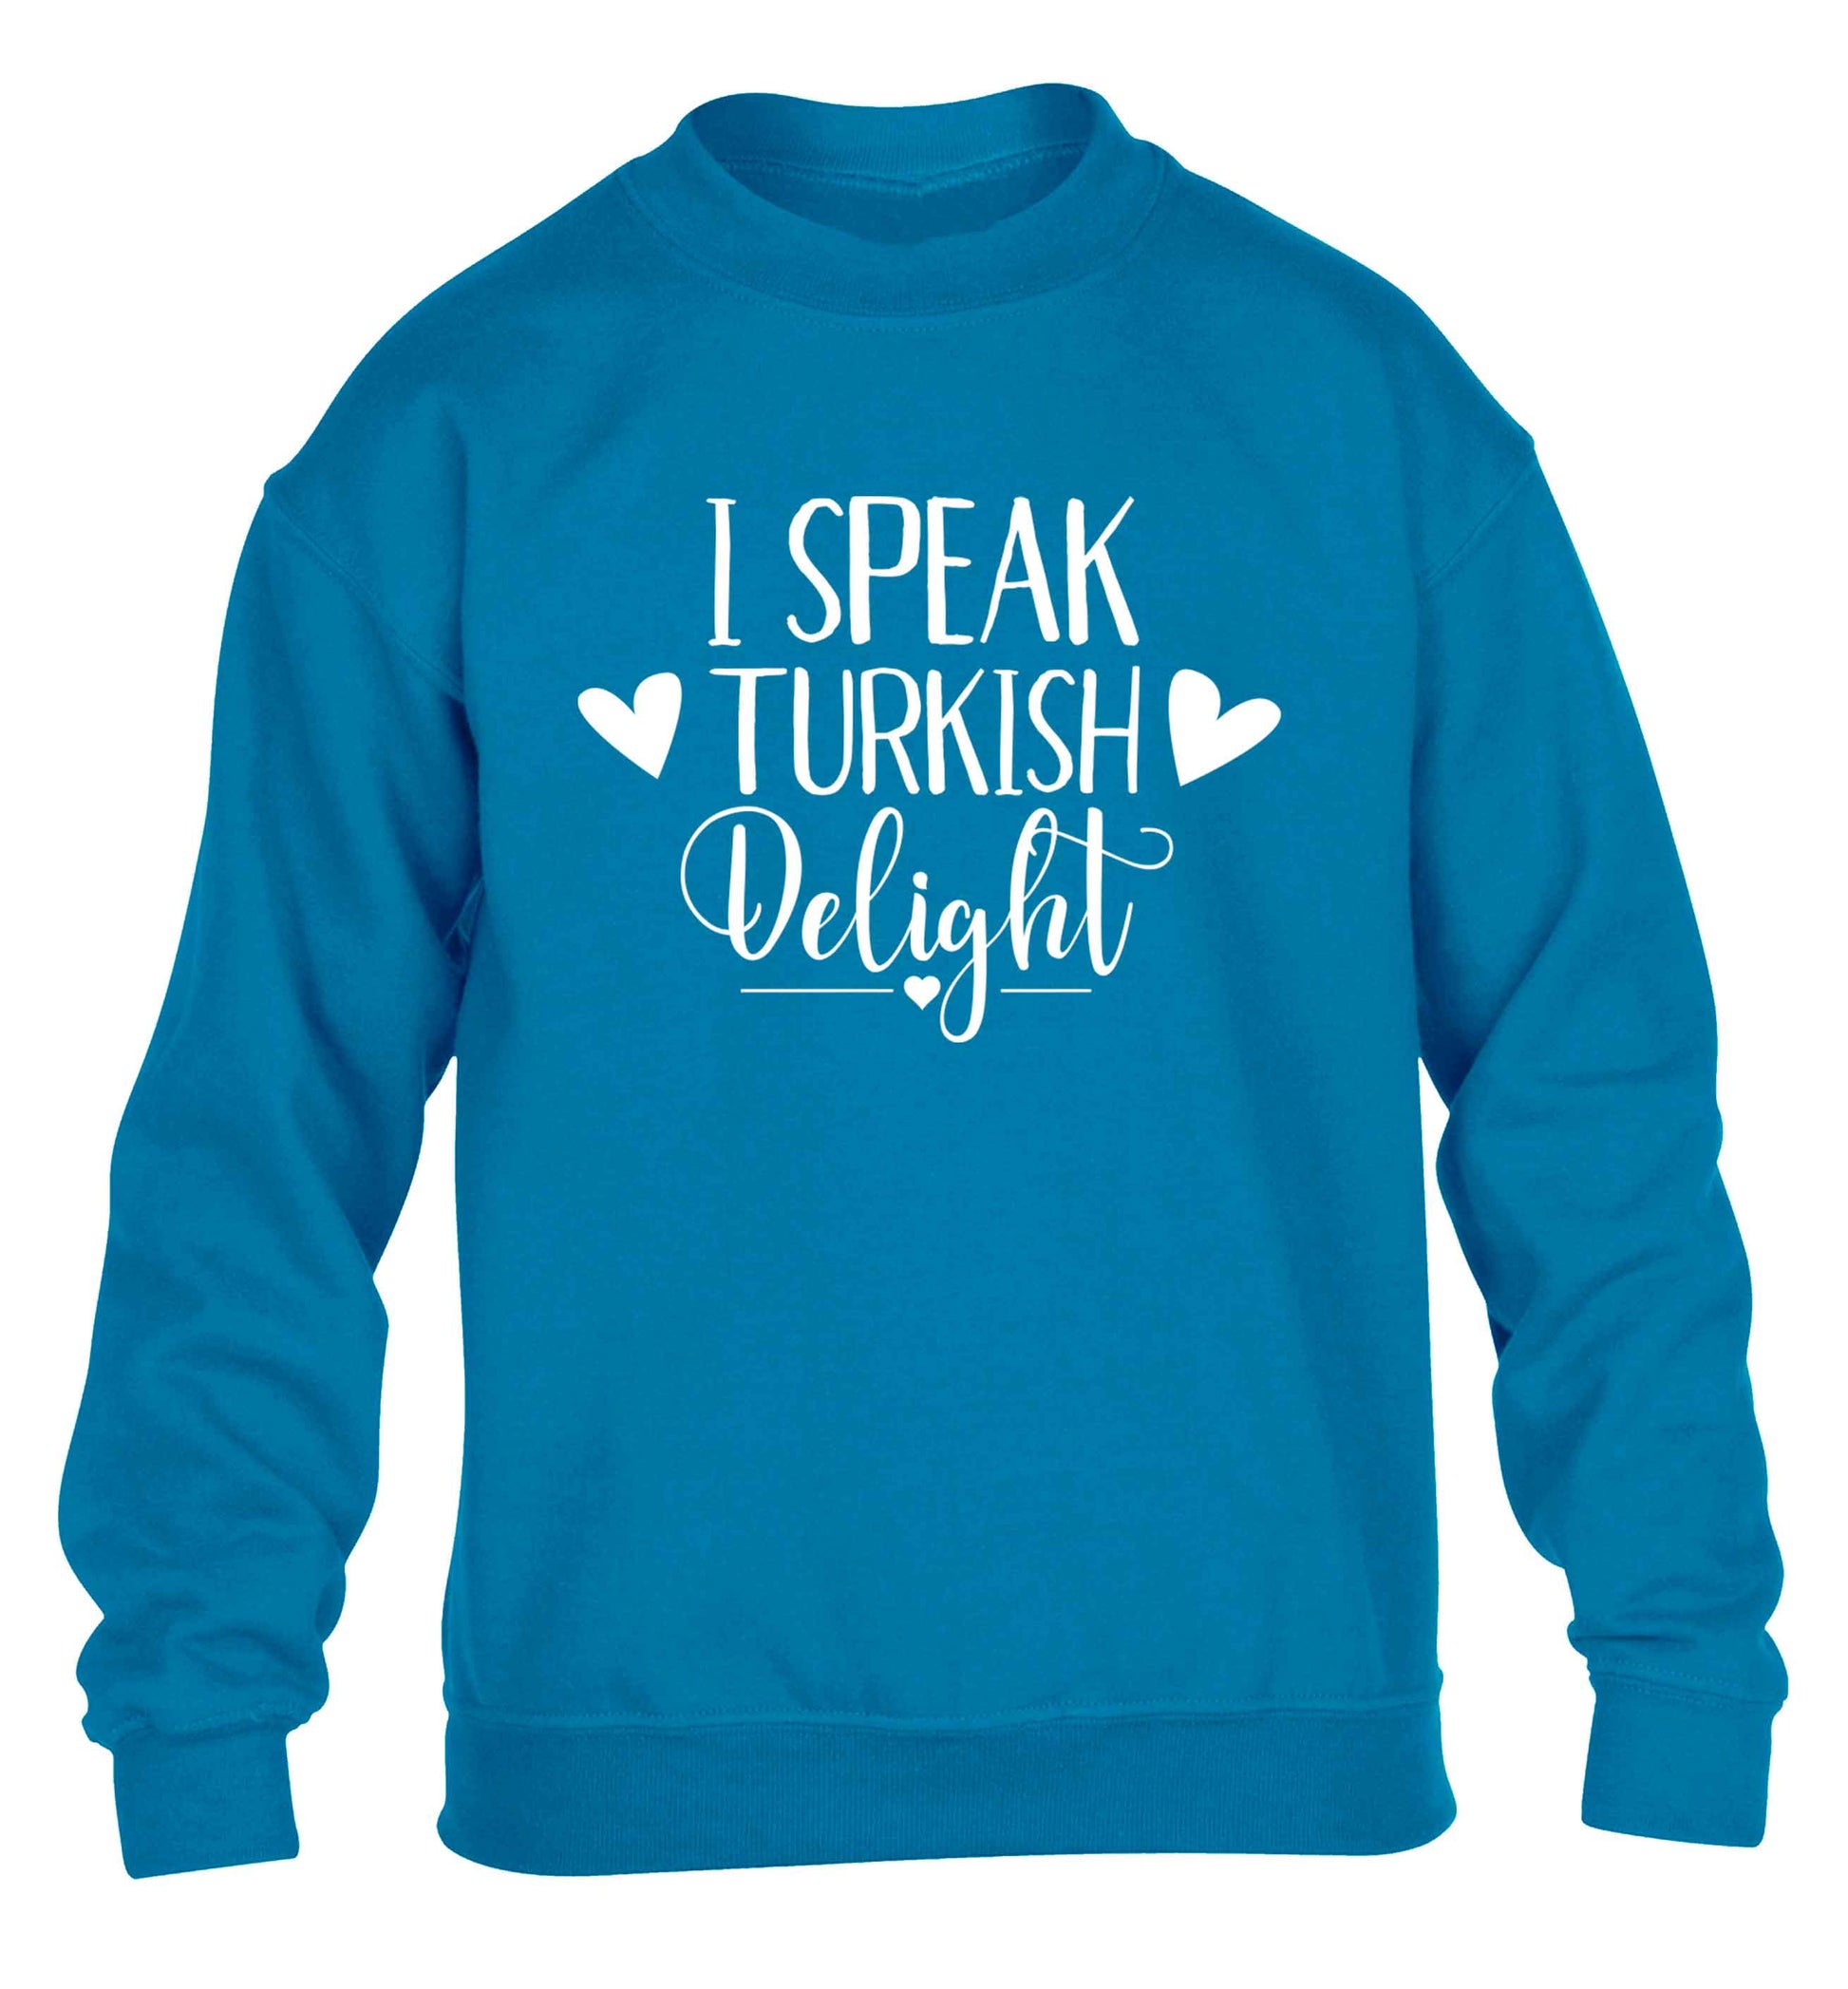 I speak turkish...delight children's blue sweater 12-13 Years